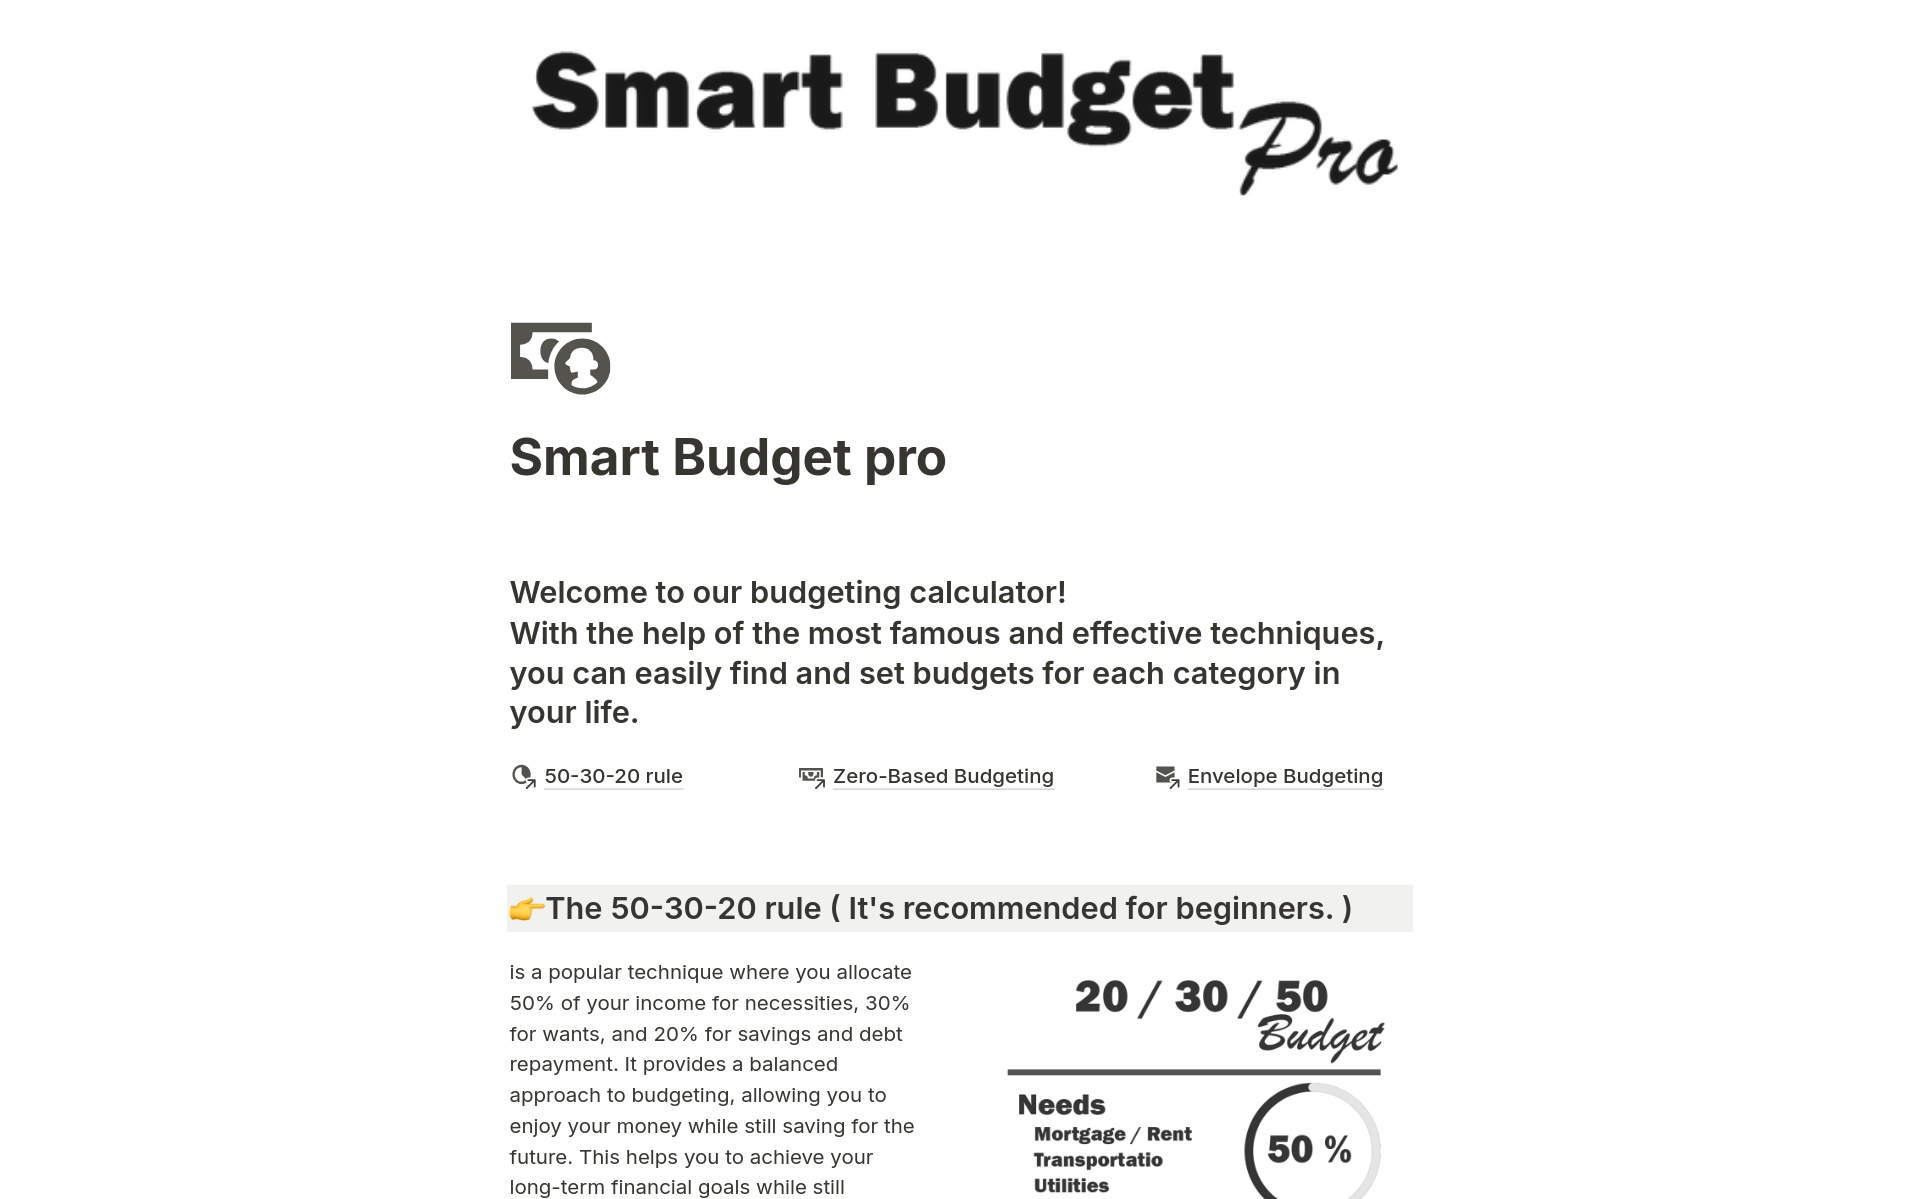 Vista previa de una plantilla para Smart Budget pro